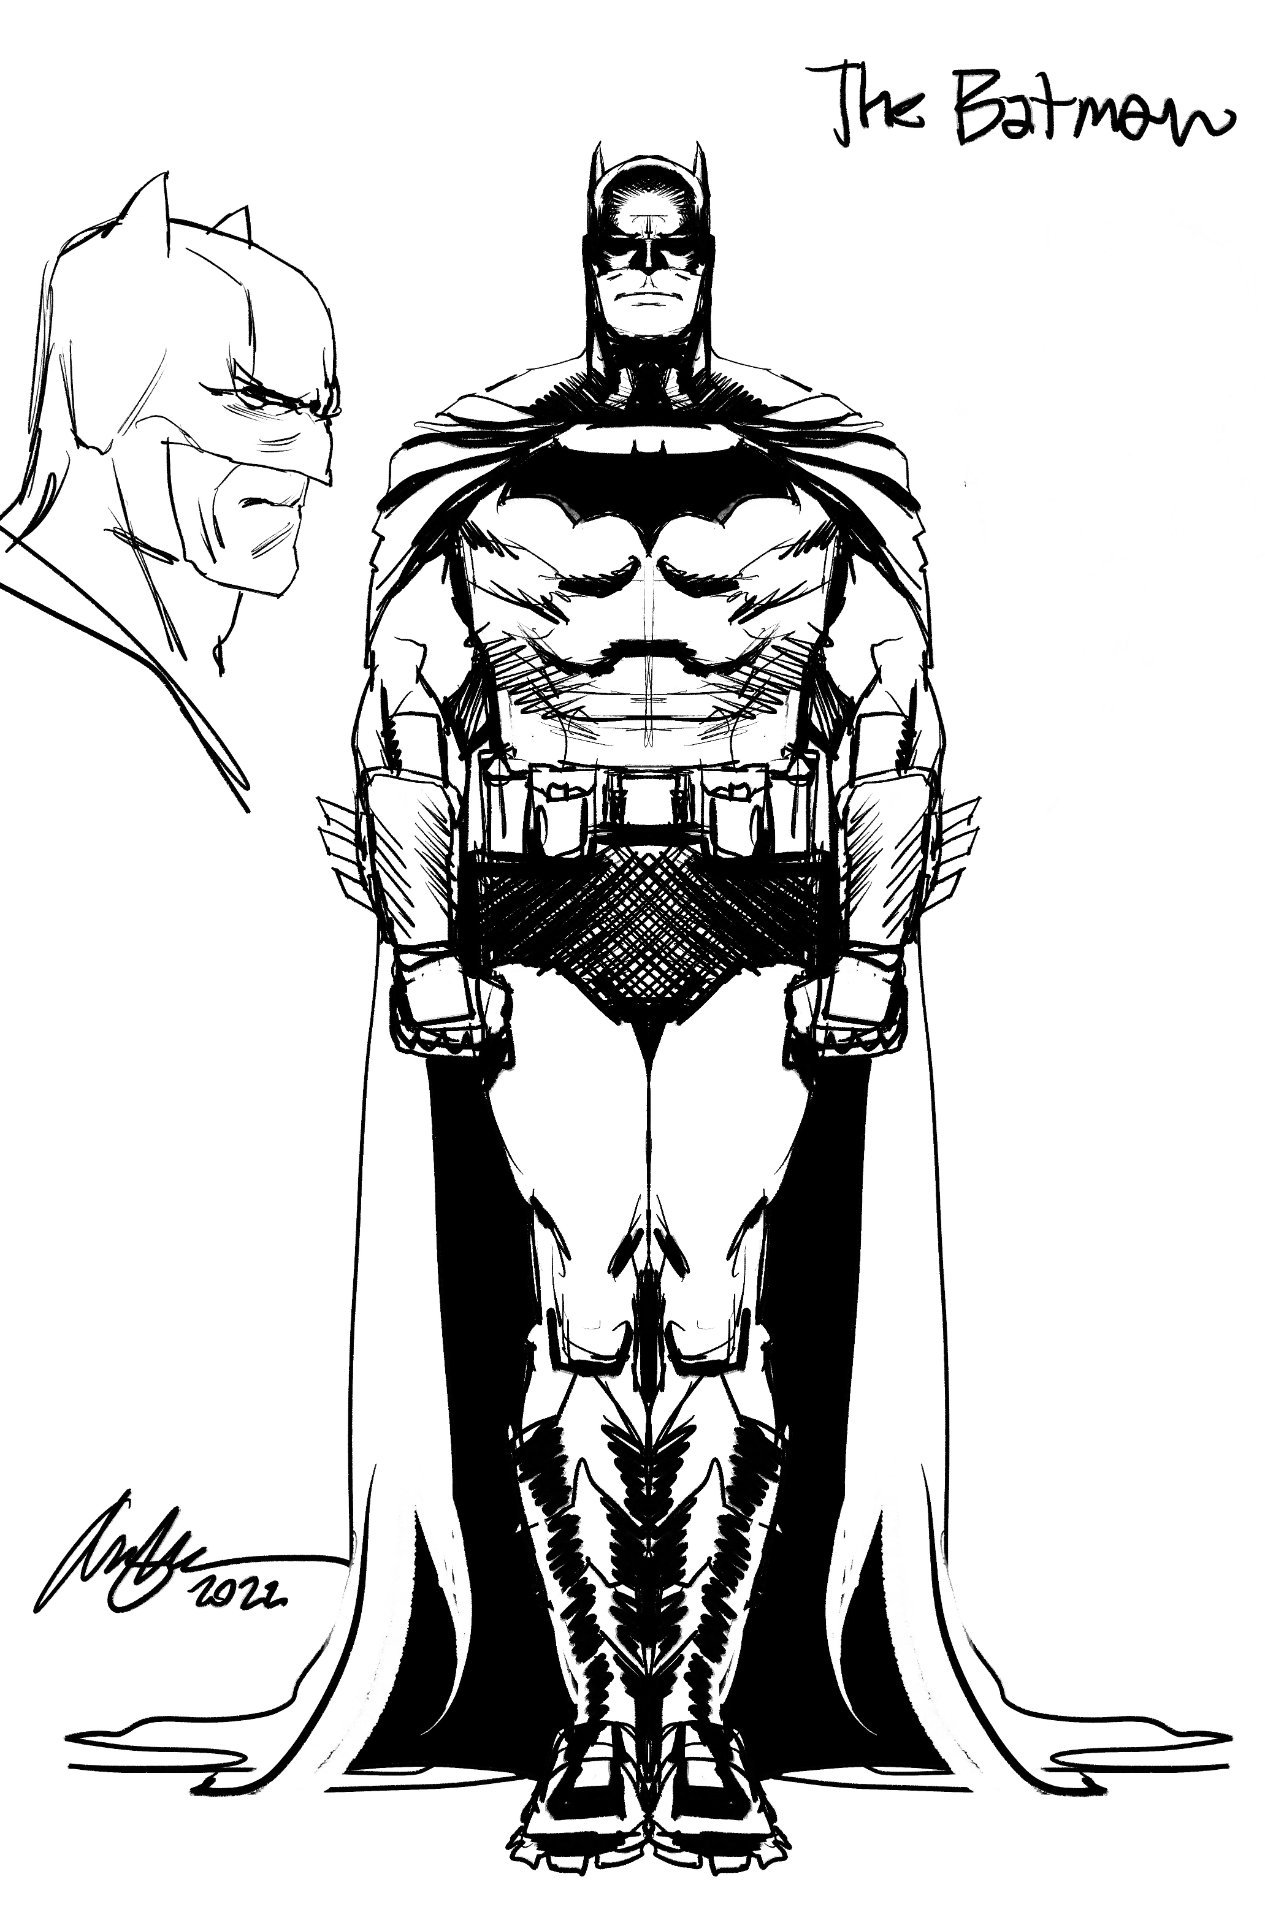 Studio del personaggio di Batman di Rafael Albuquerque